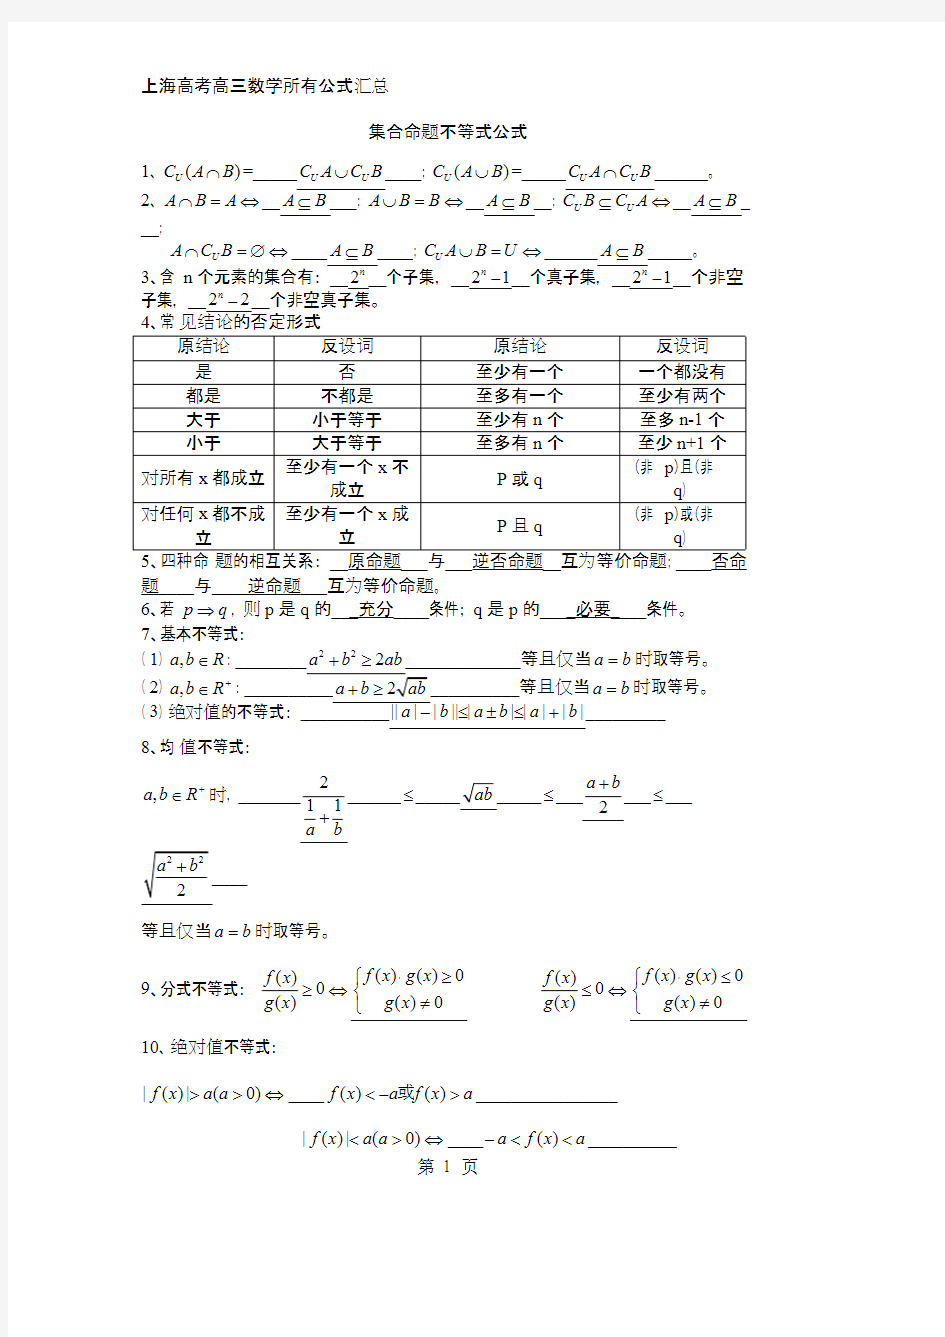 上海高中高考数学所有公式汇总(可打印修改)